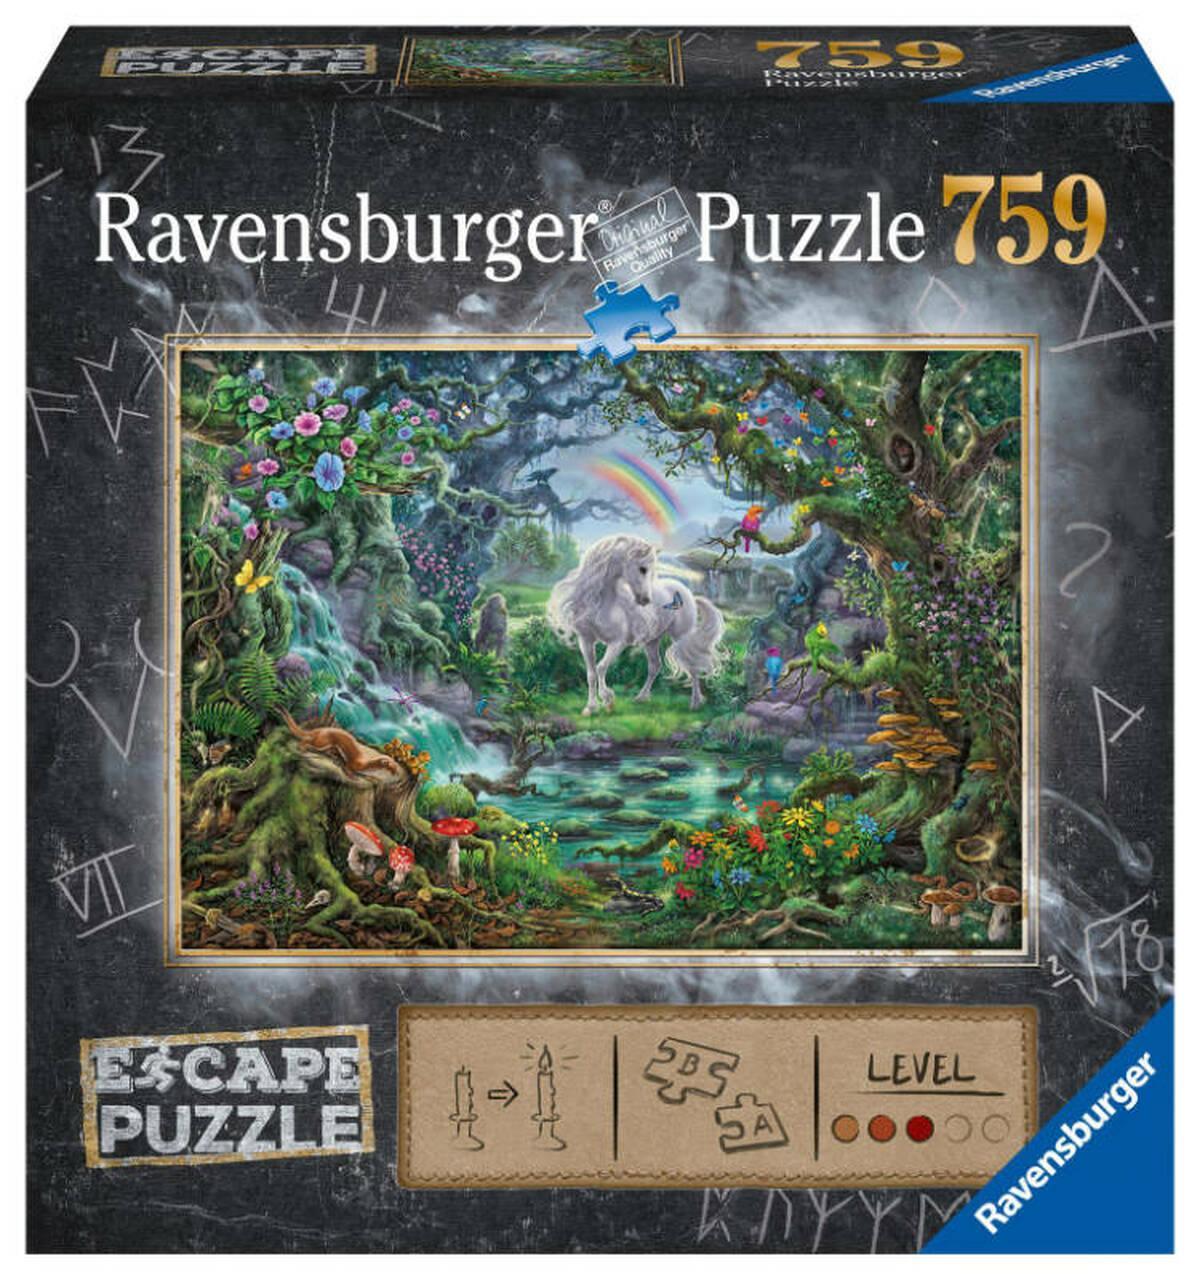 Ravensburger | Escape Puzzle: Unicorn 759 Piece Jigsaw Puzzle